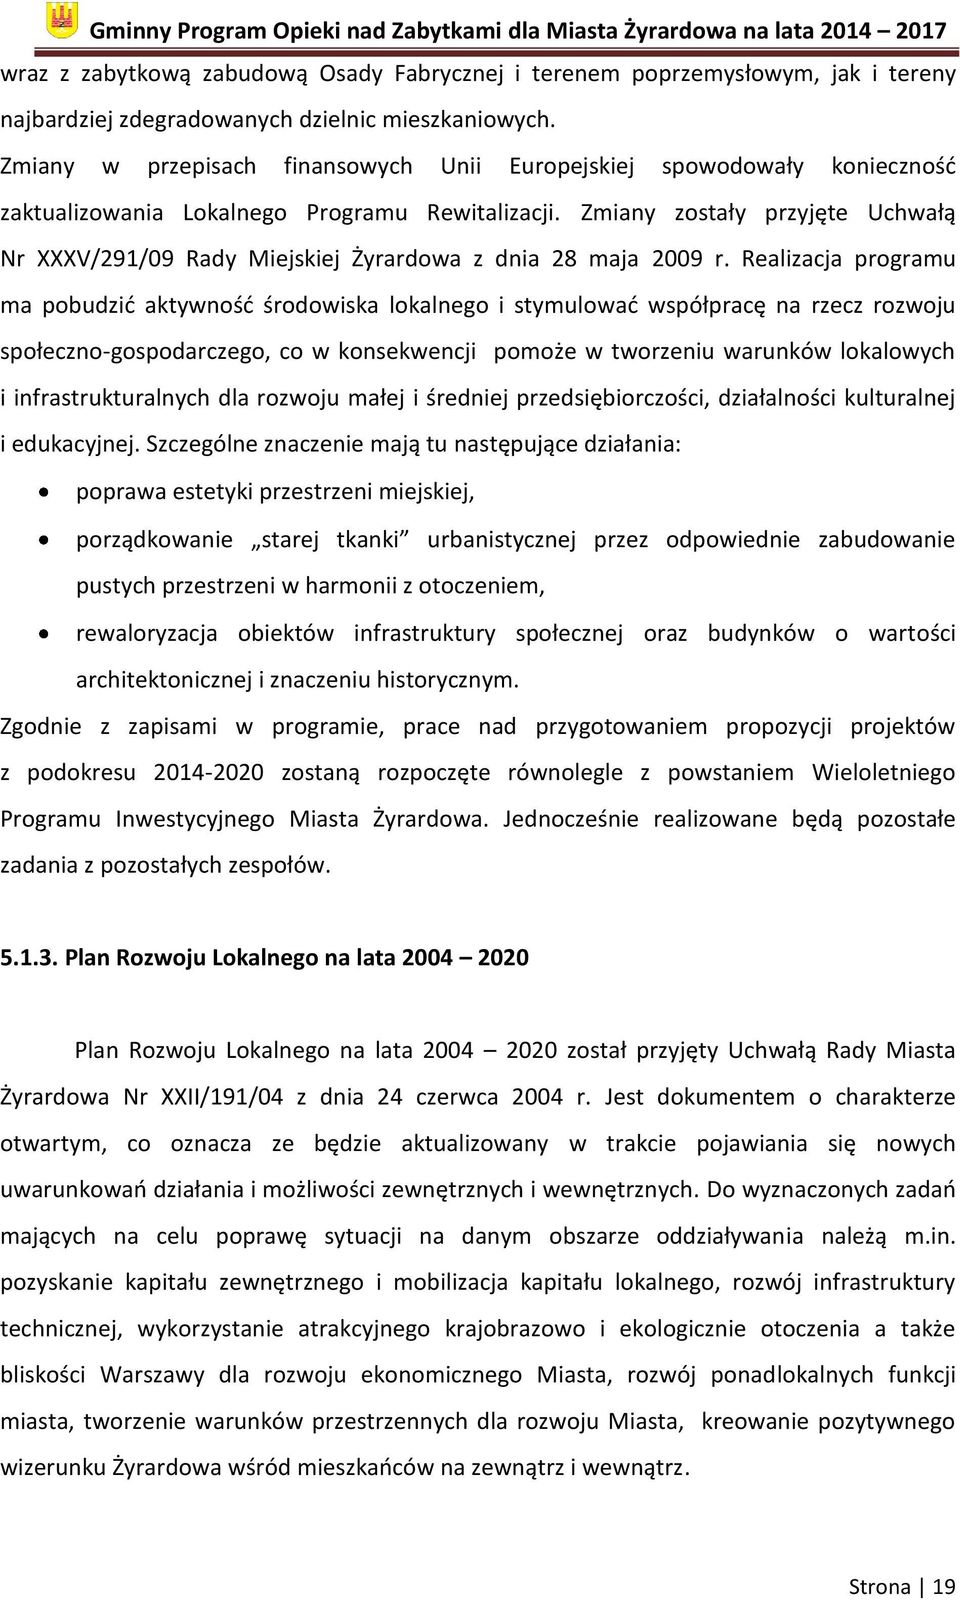 Zmiany zostały przyjęte Uchwałą Nr XXXV/291/09 Rady Miejskiej Żyrardowa z dnia 28 maja 2009 r.